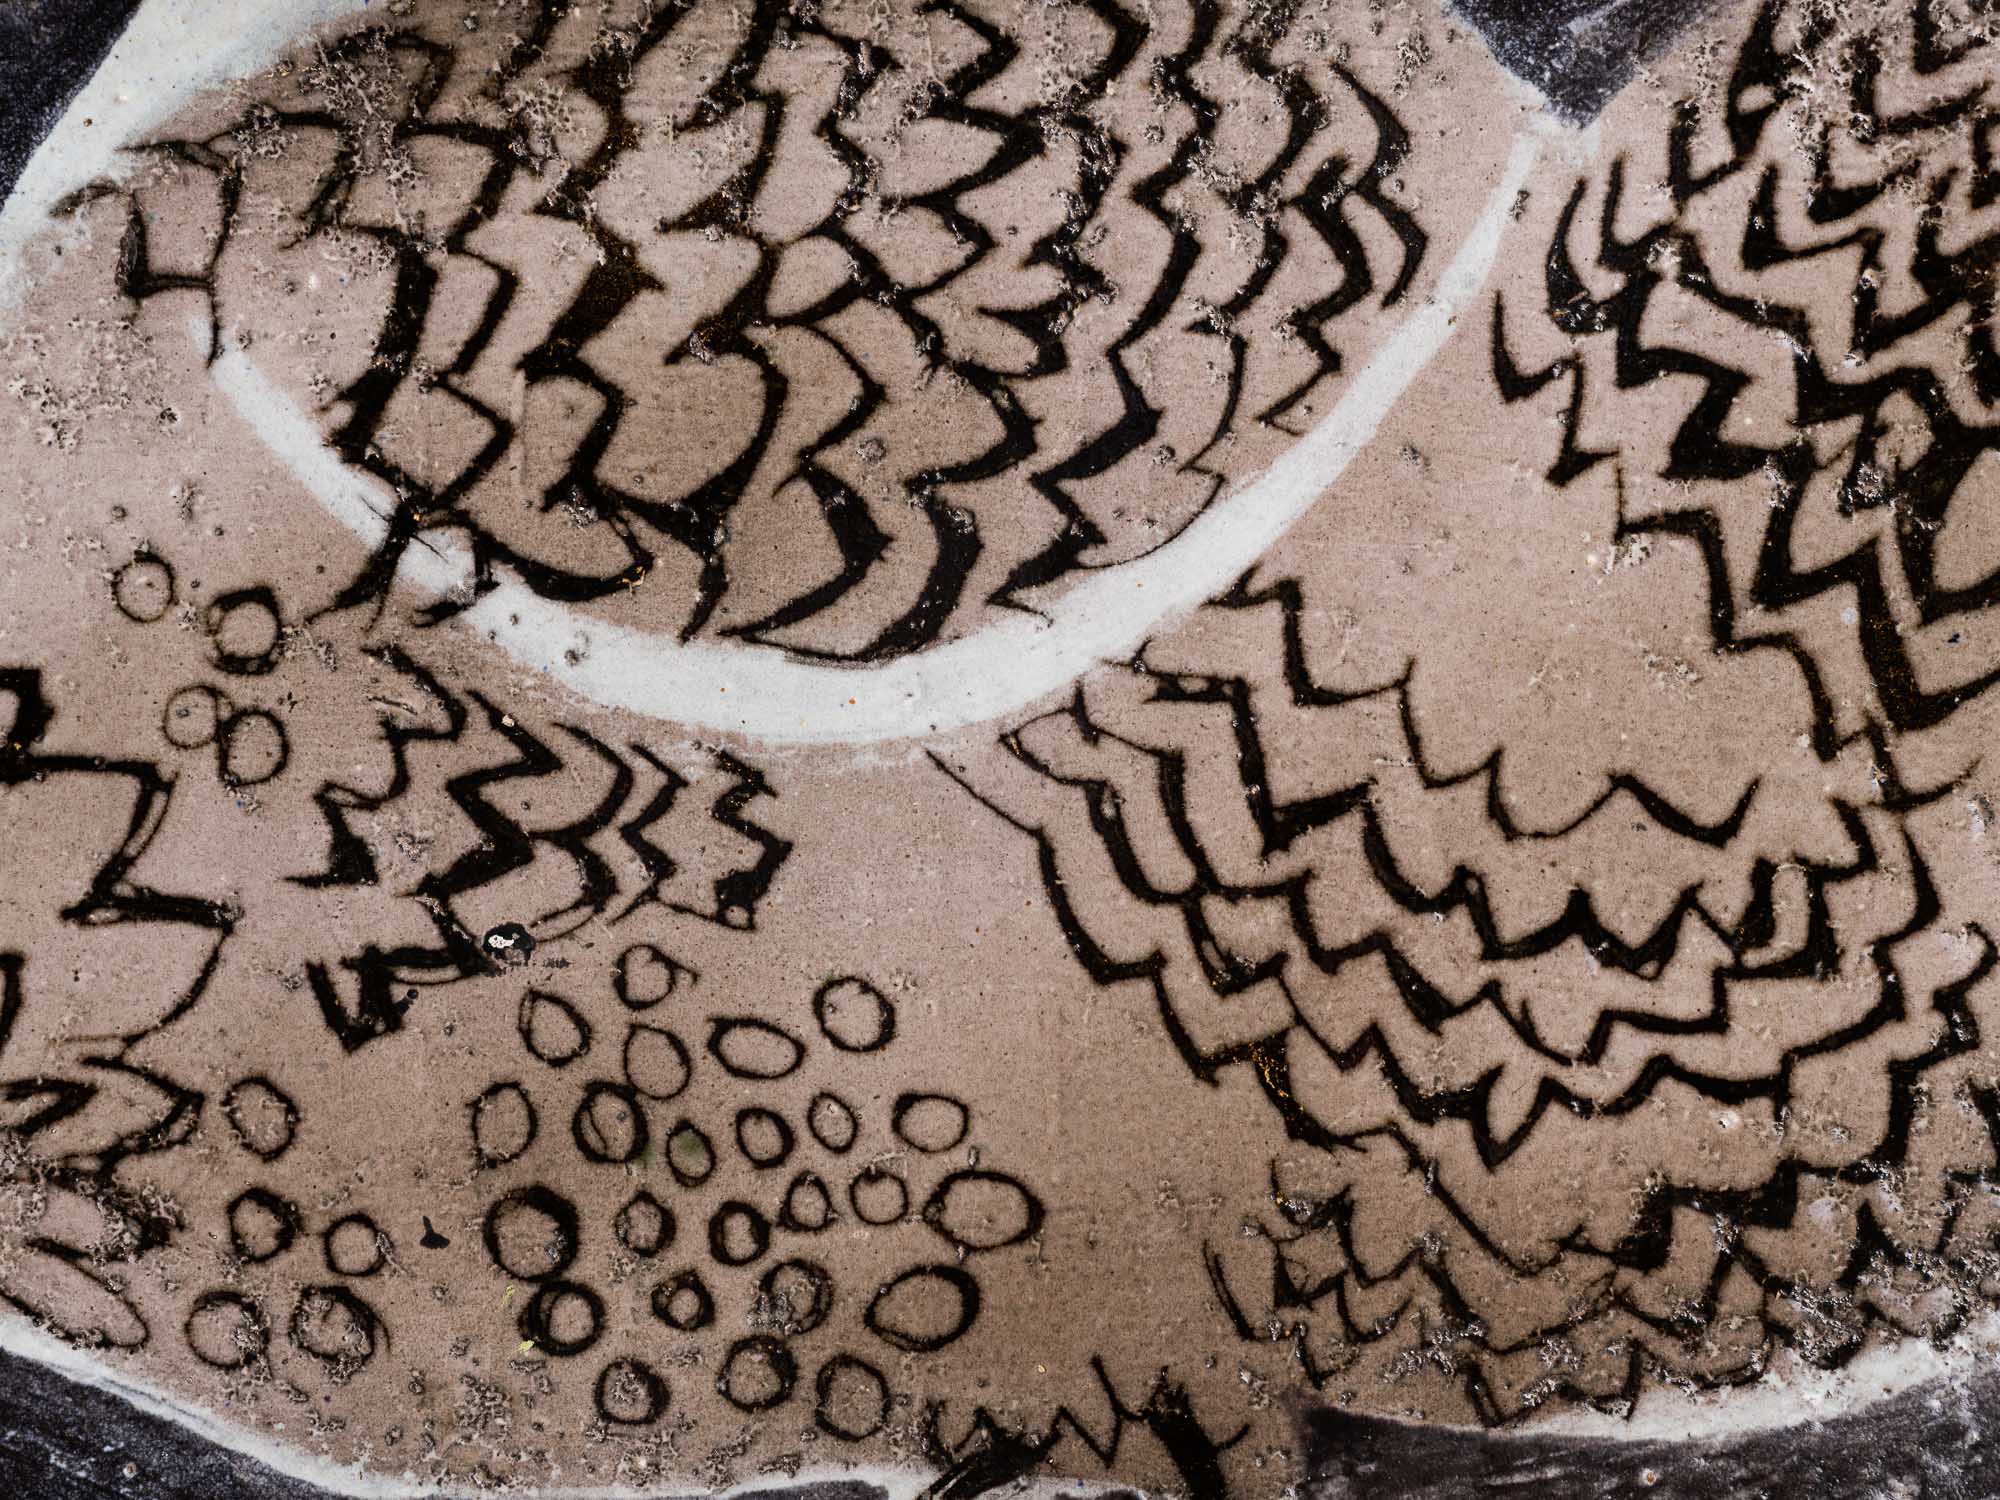 Exceptionnel plat à décor zoomorphe par Aline Favre, Suisse (1953)..Oustanding huge dish with zoomorphic pattern by Aline Favre, Switzerland (1953)